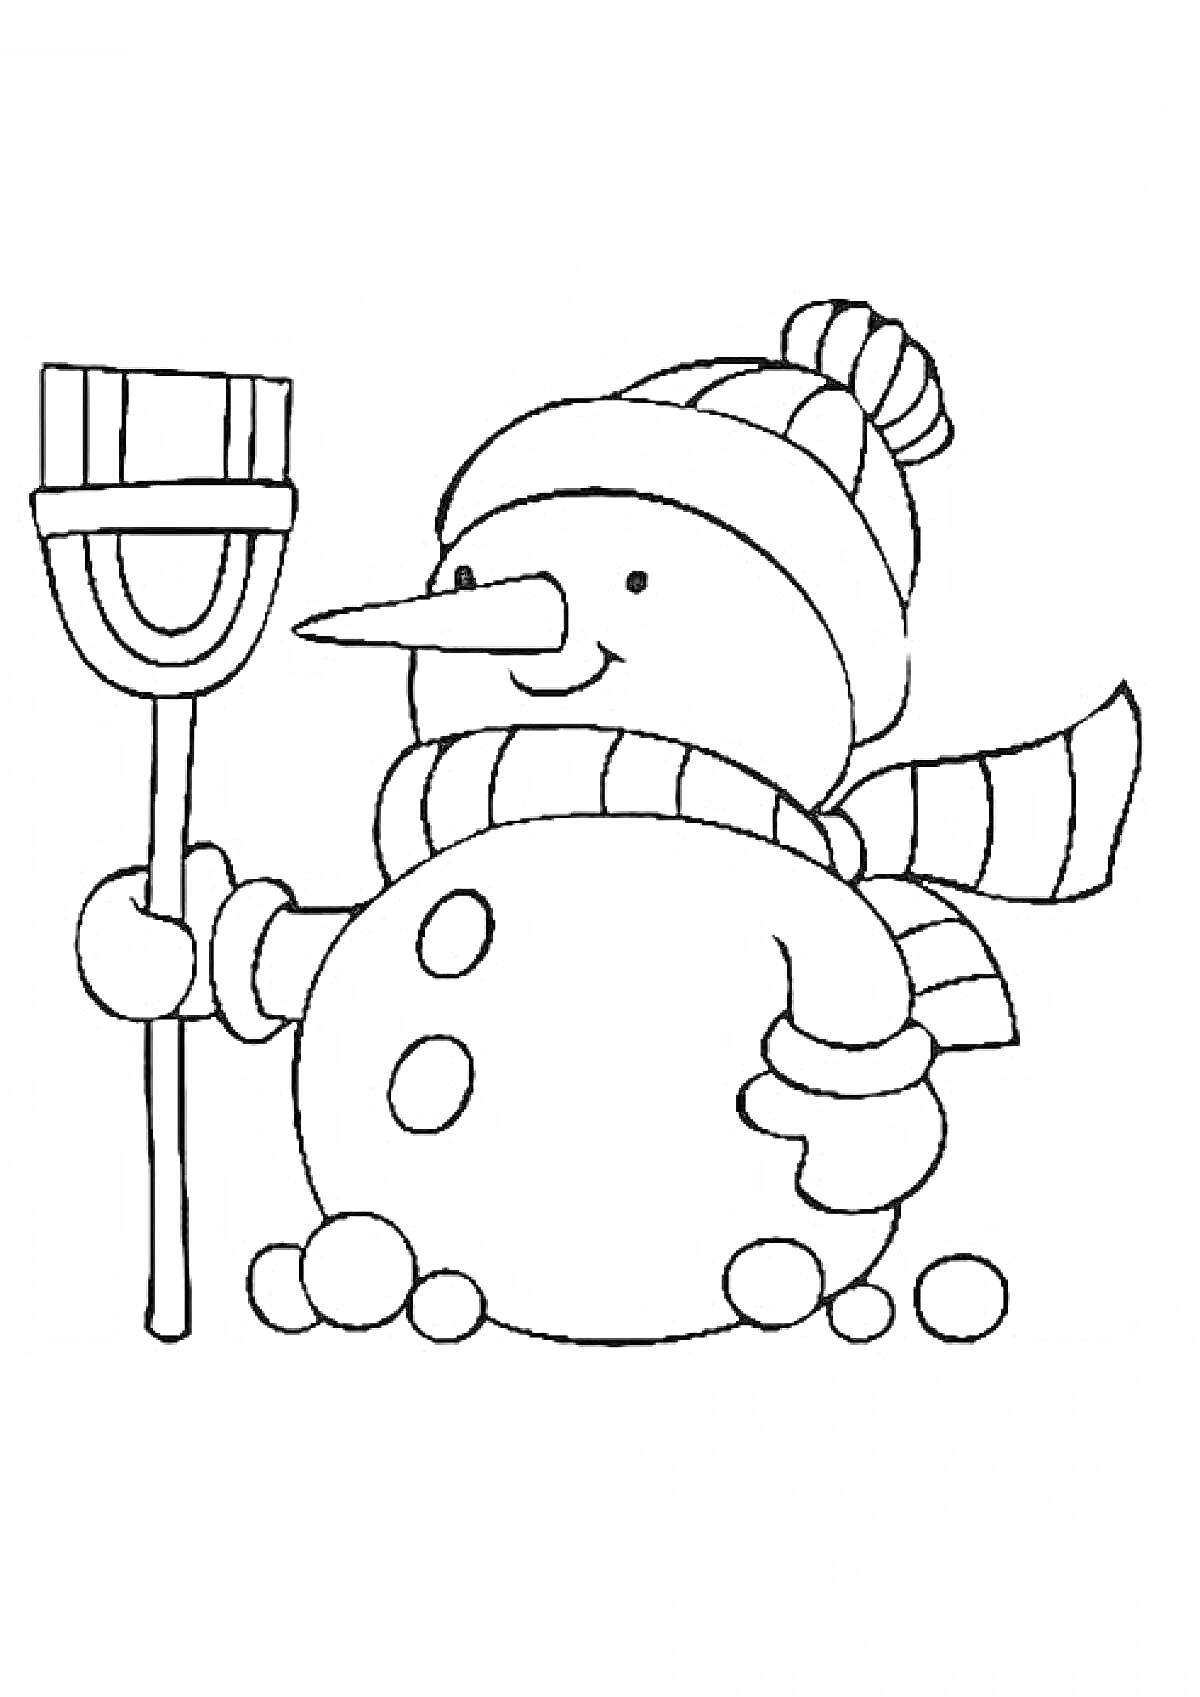 Снеговик с метлой, шарфом и шапкой, окружённый снежками